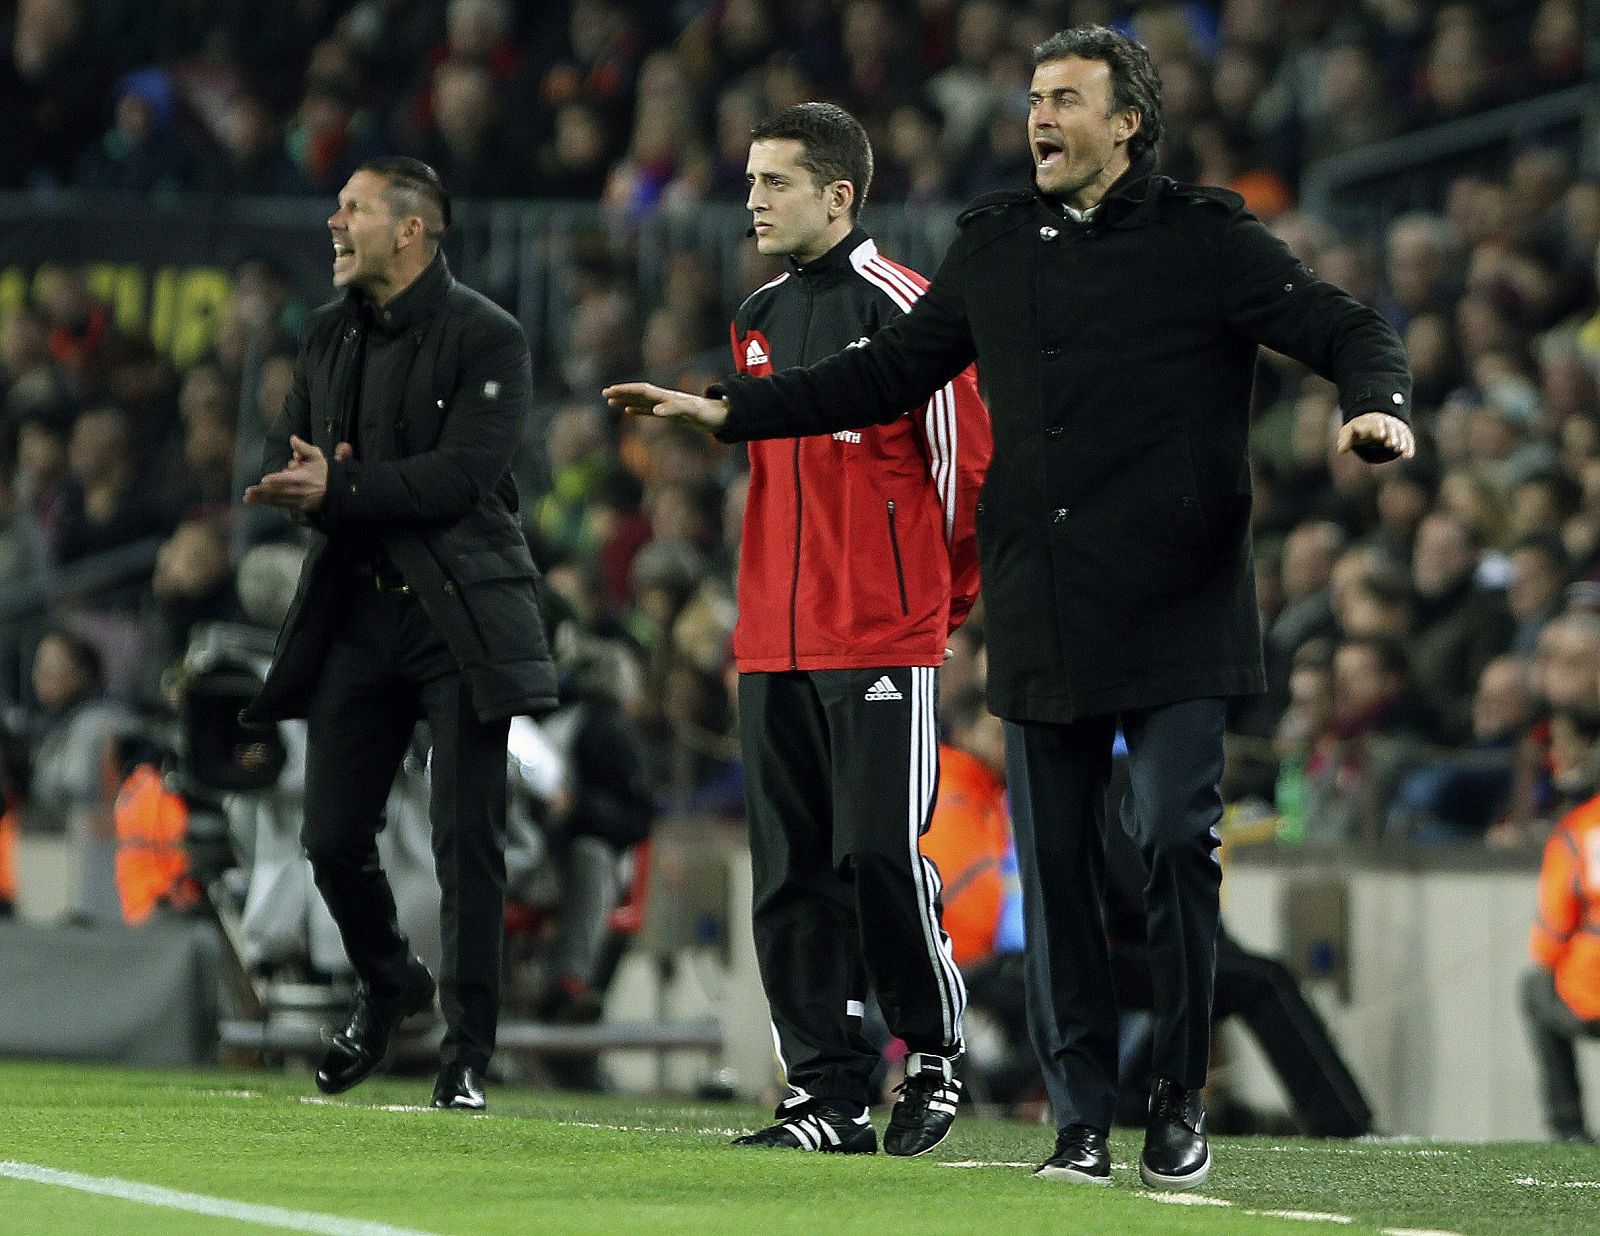 Los dos entrenadores, Luis Enrique y Simeone, durante el partido.